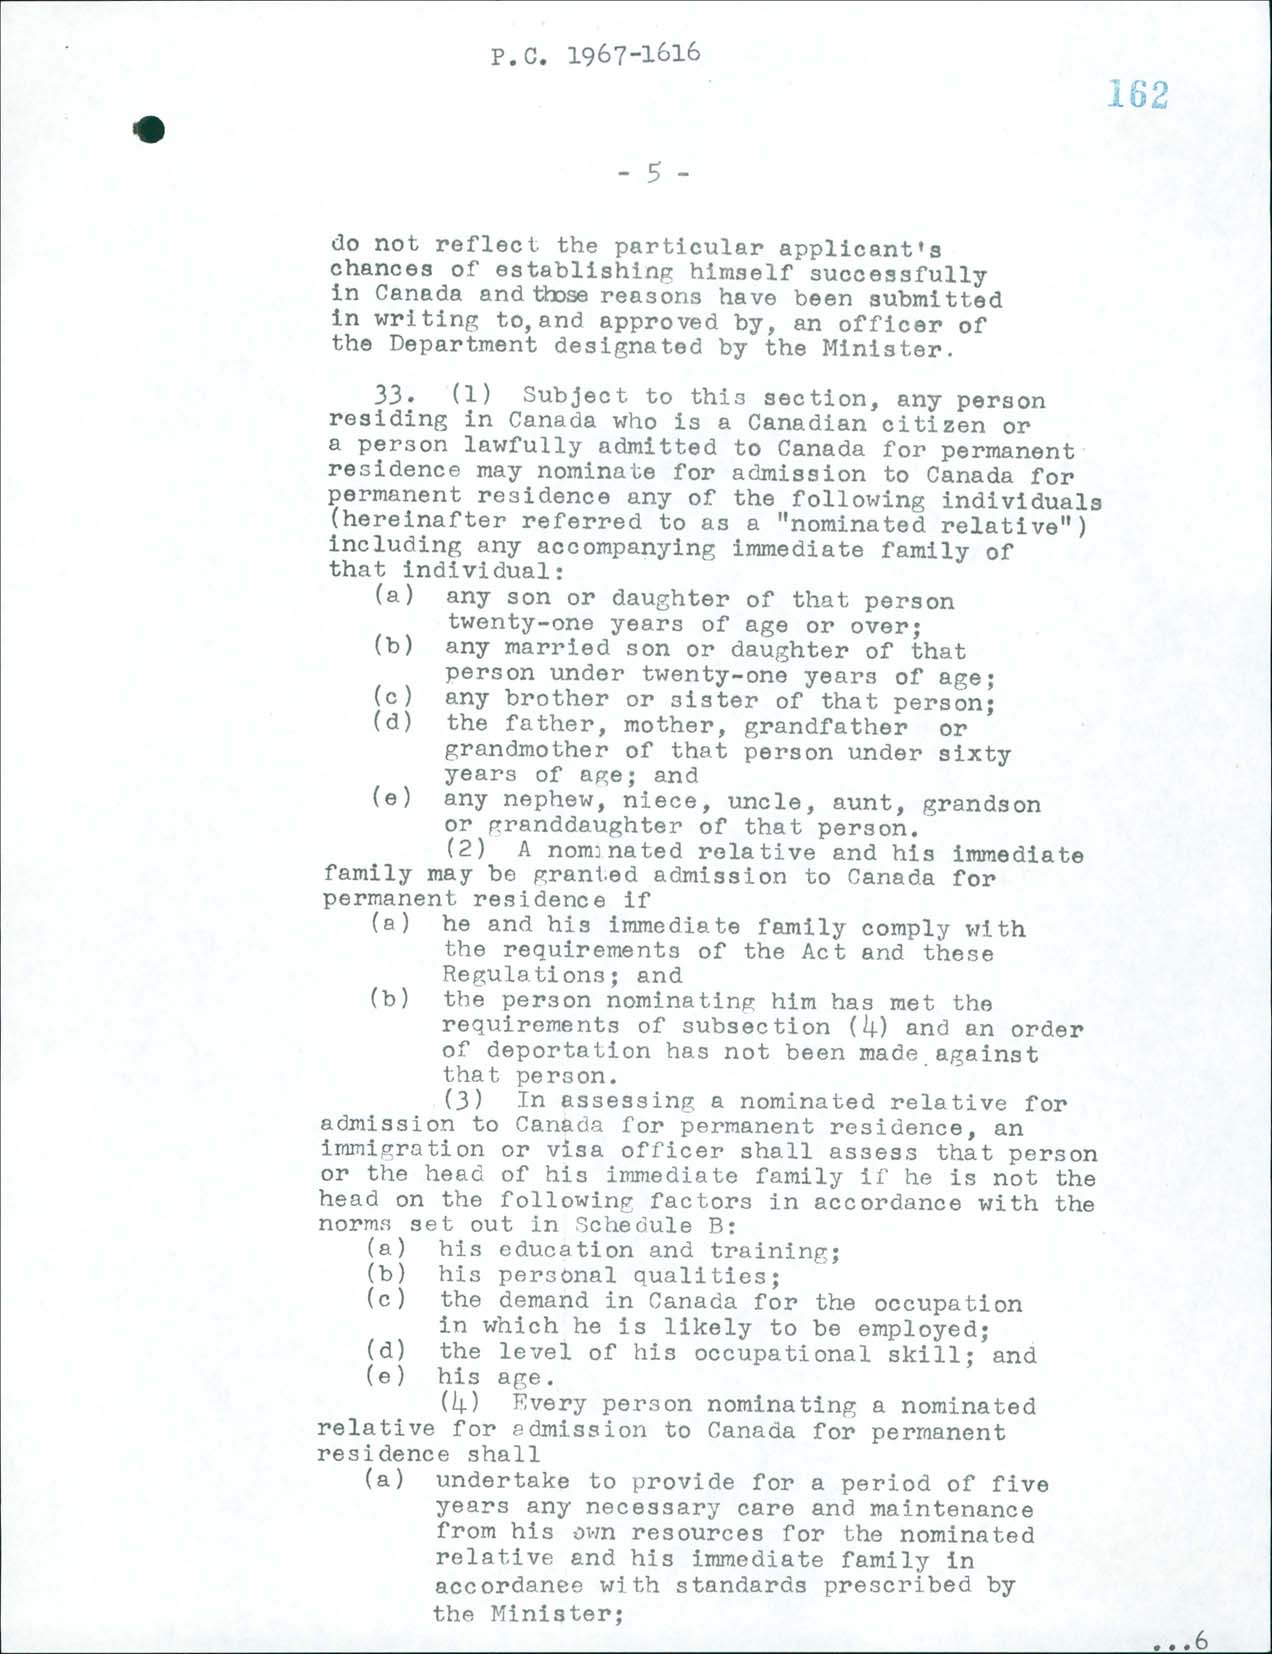 Page 5 Règlement sur l’immigration, Décret du Conseil CP 1967-1616, 1967